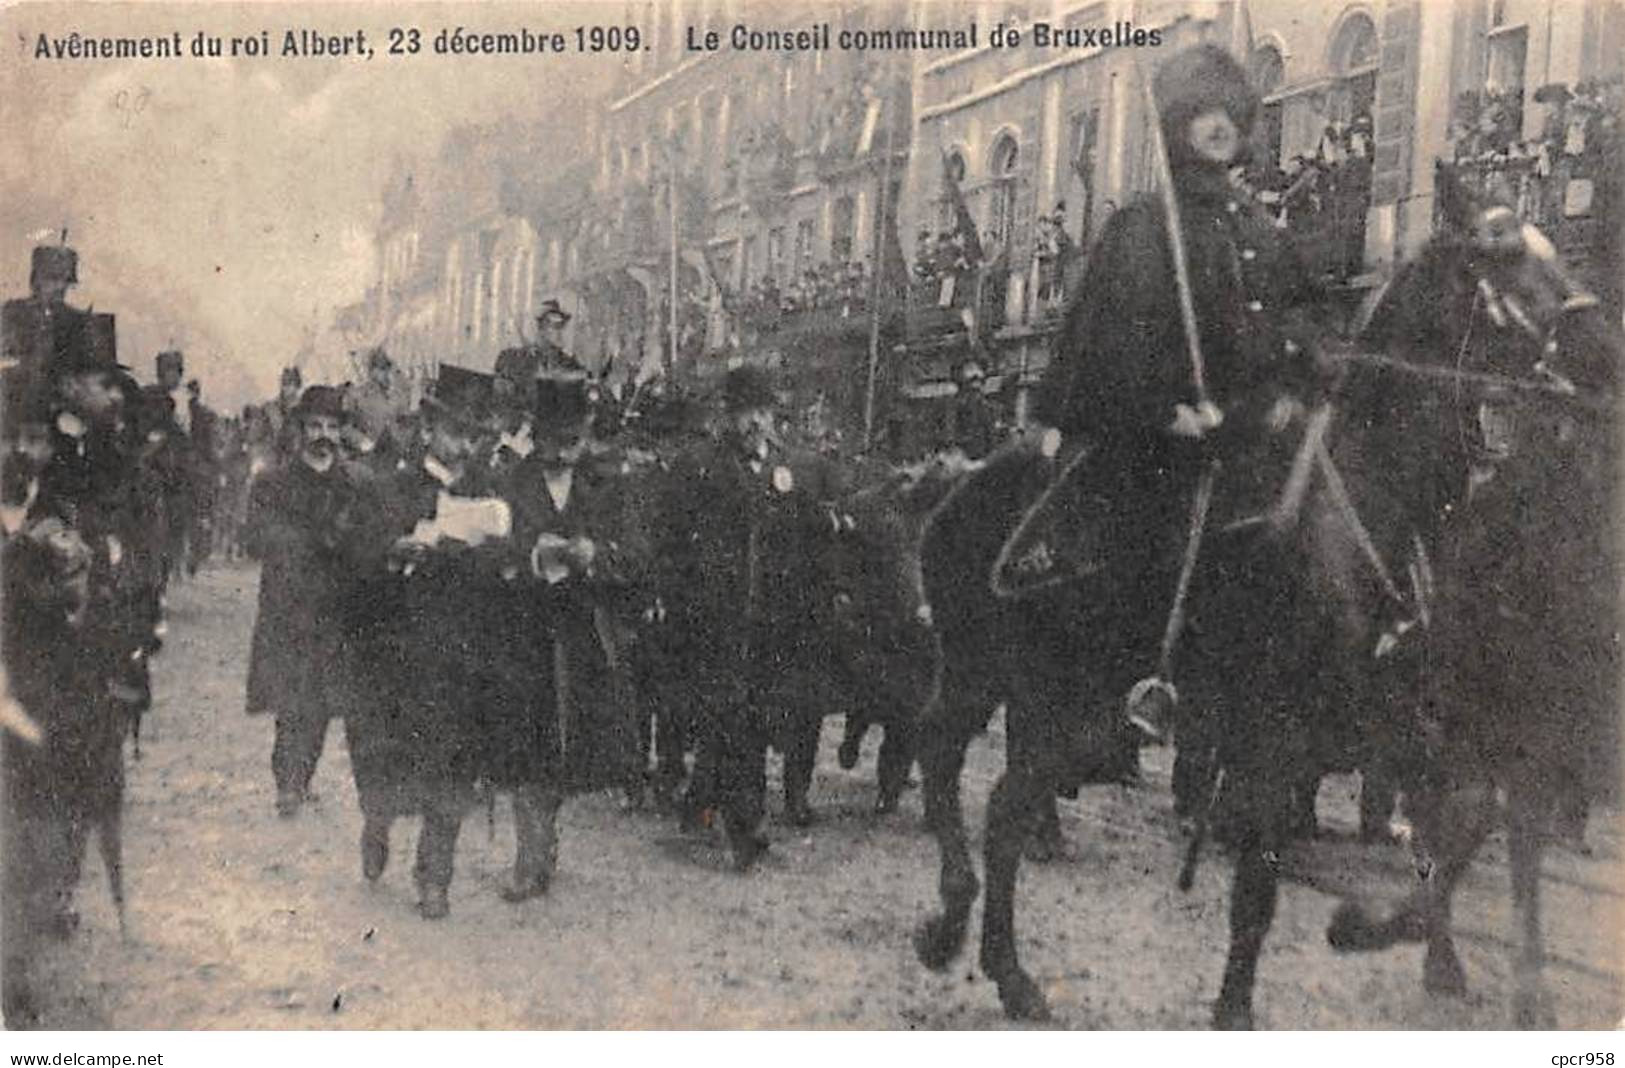 BELGIQUE - SAN33862 - Avènement Du Roi Albert , 23 Décembre 1909 - Le Conseil Communal De Bruxelles - Bruxelles National - Aéroport